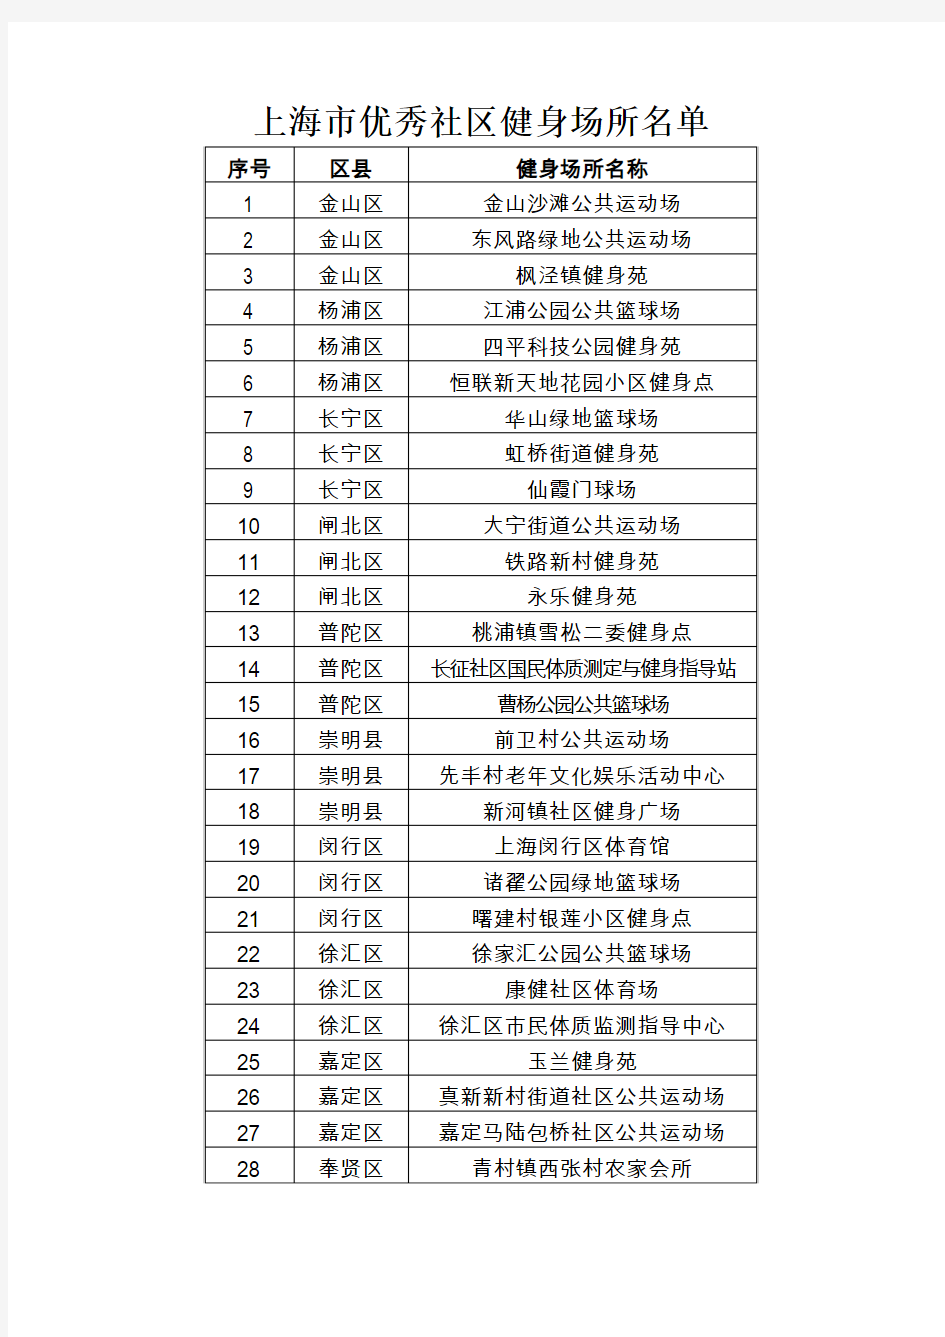 上海市优秀社区健身场所名单